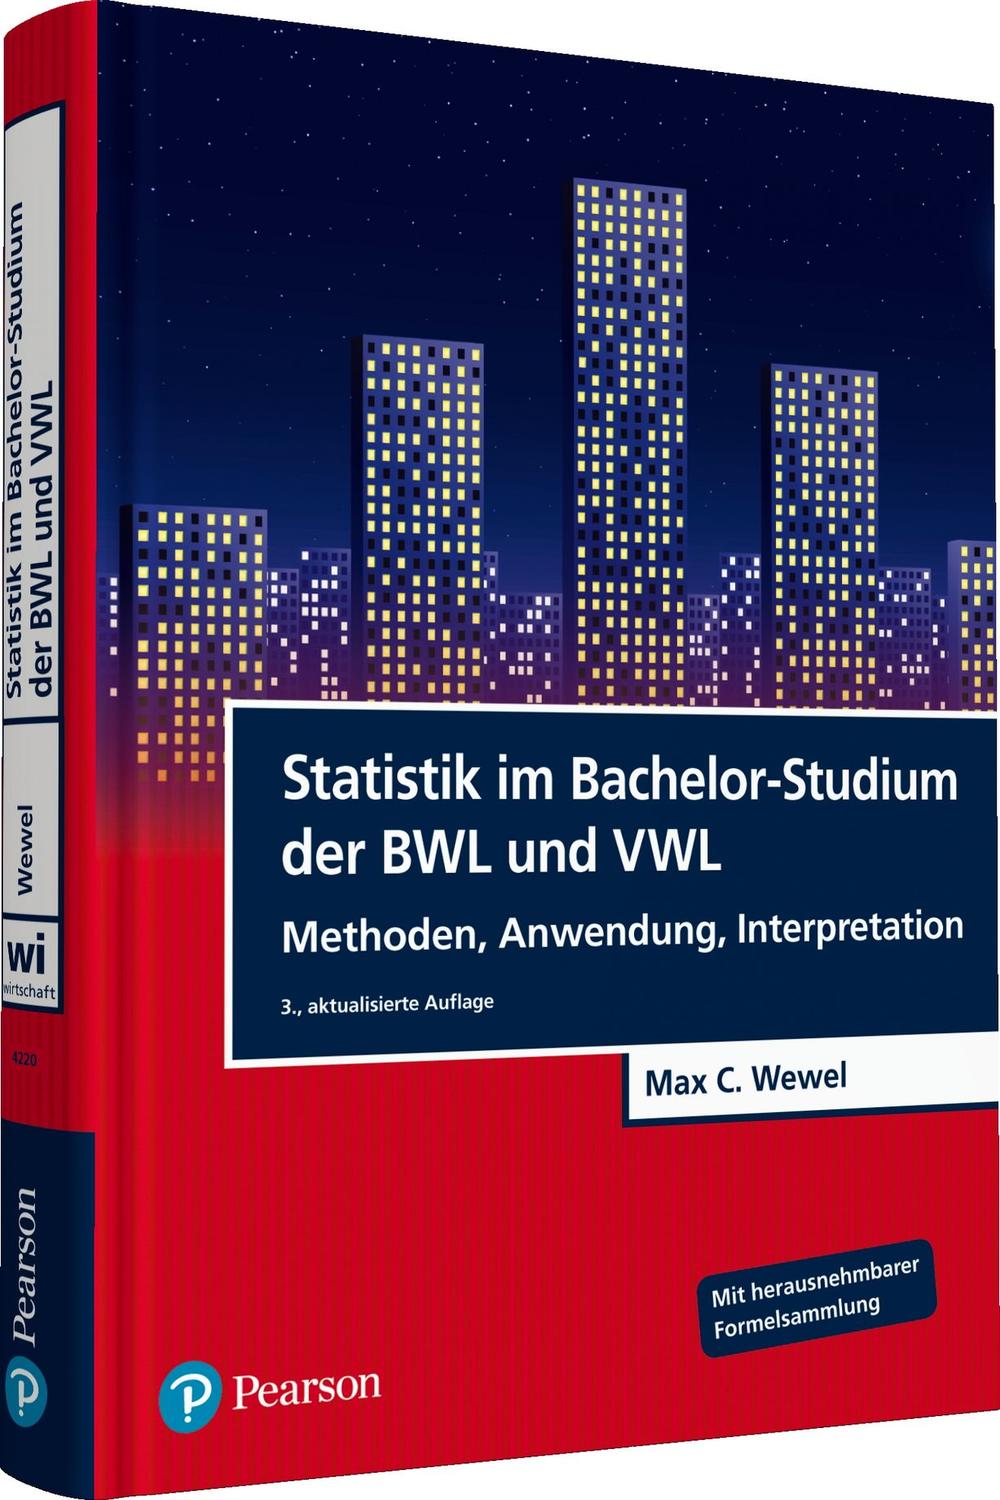 Statistik im Bachelor-Studium der BWL und VWL - Max C. Wewel